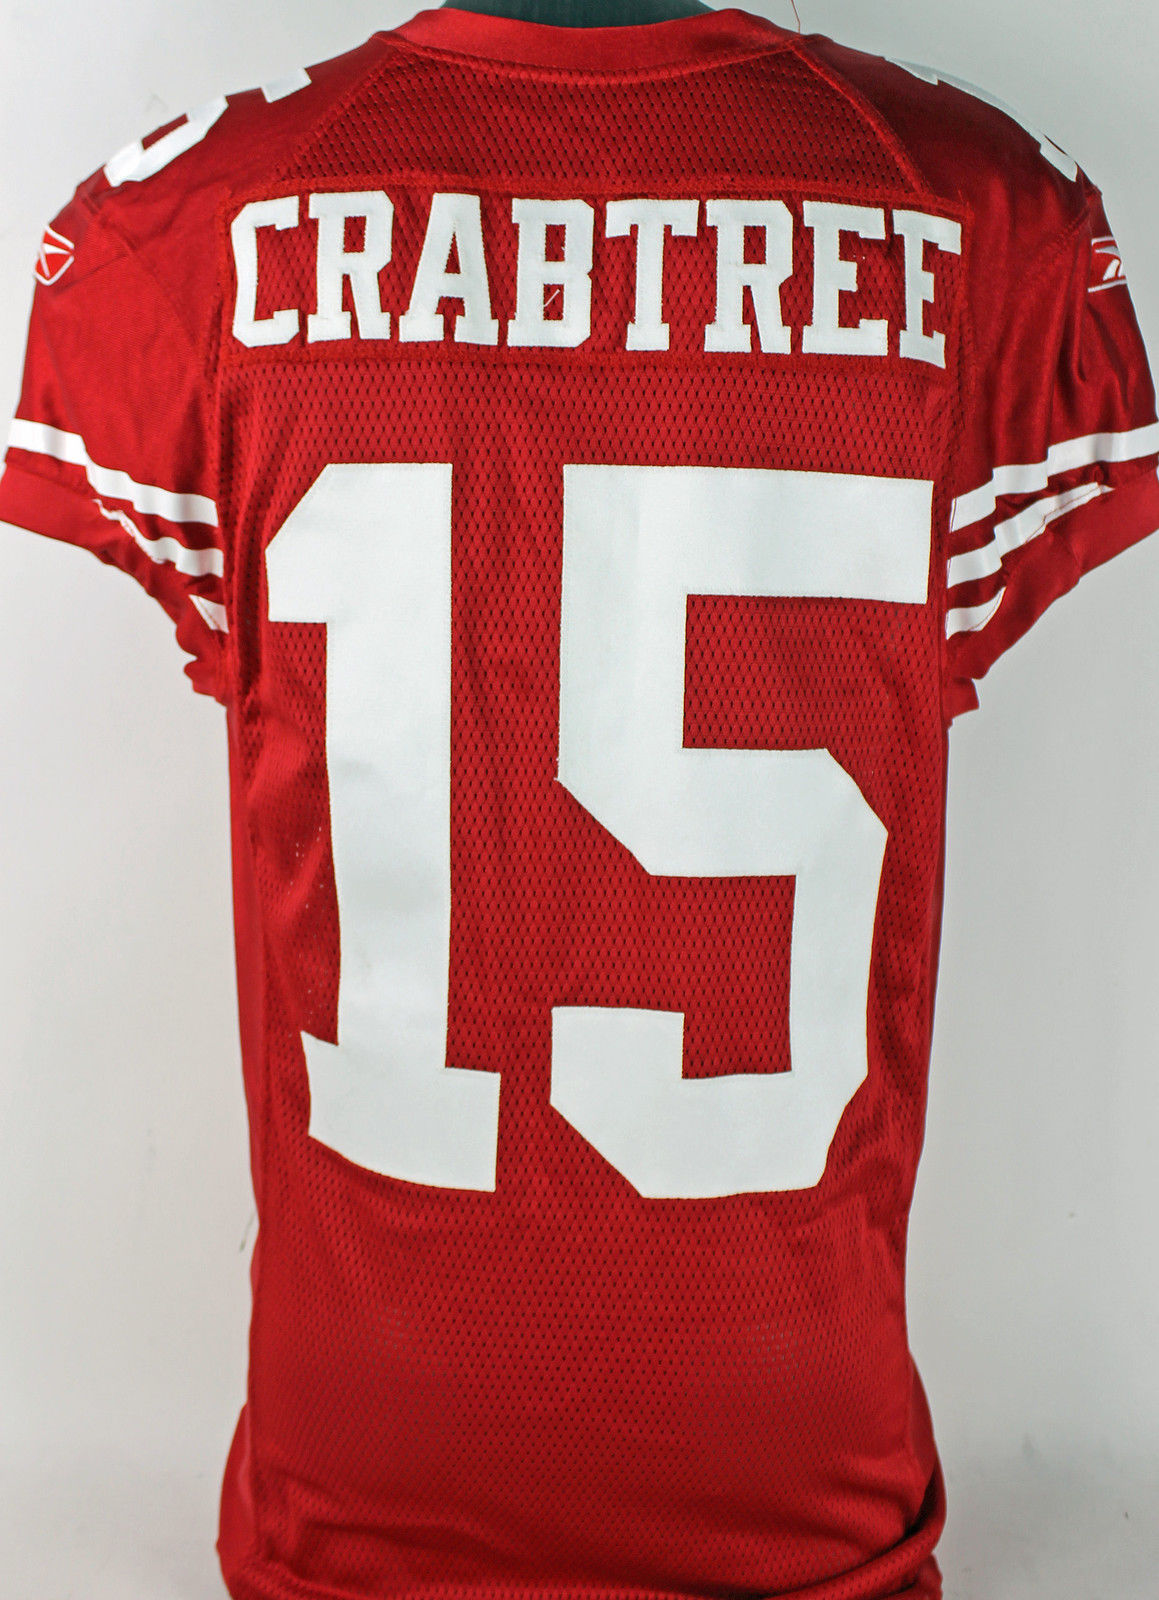 crabtree jersey